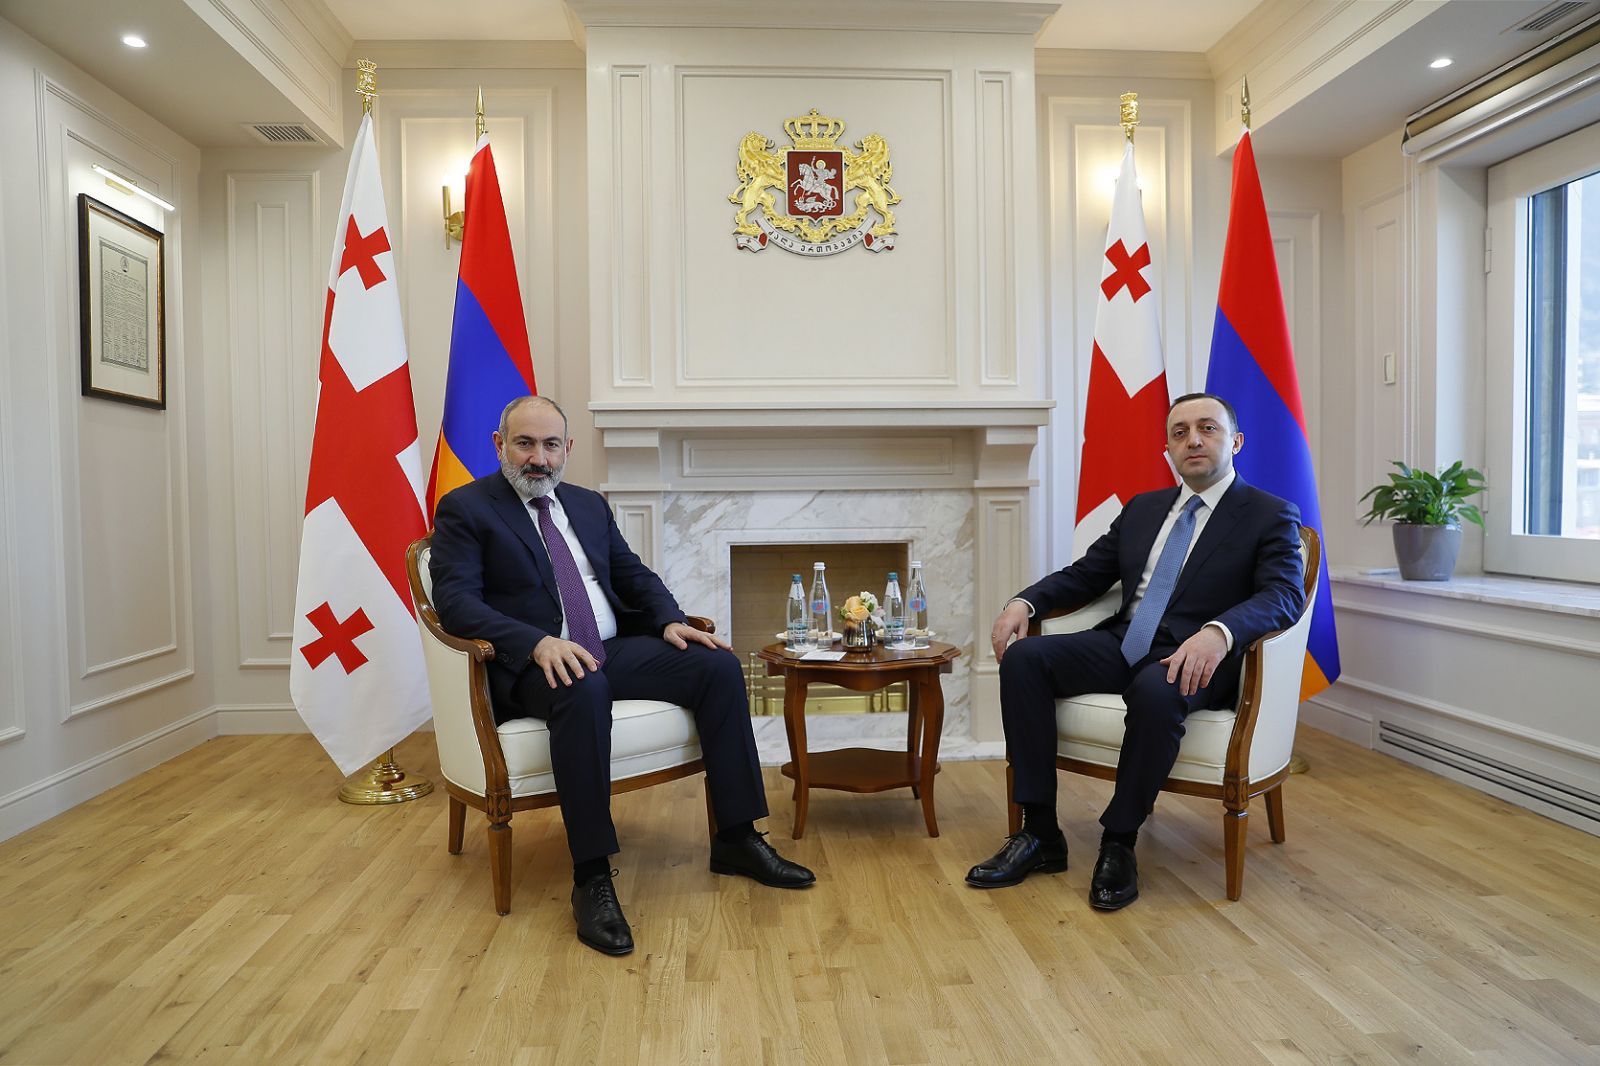 ՀՀ-ի և Վրաստանի վարչապետերը հանդես են գալիս հայտարարություններով (Ուղիղ)